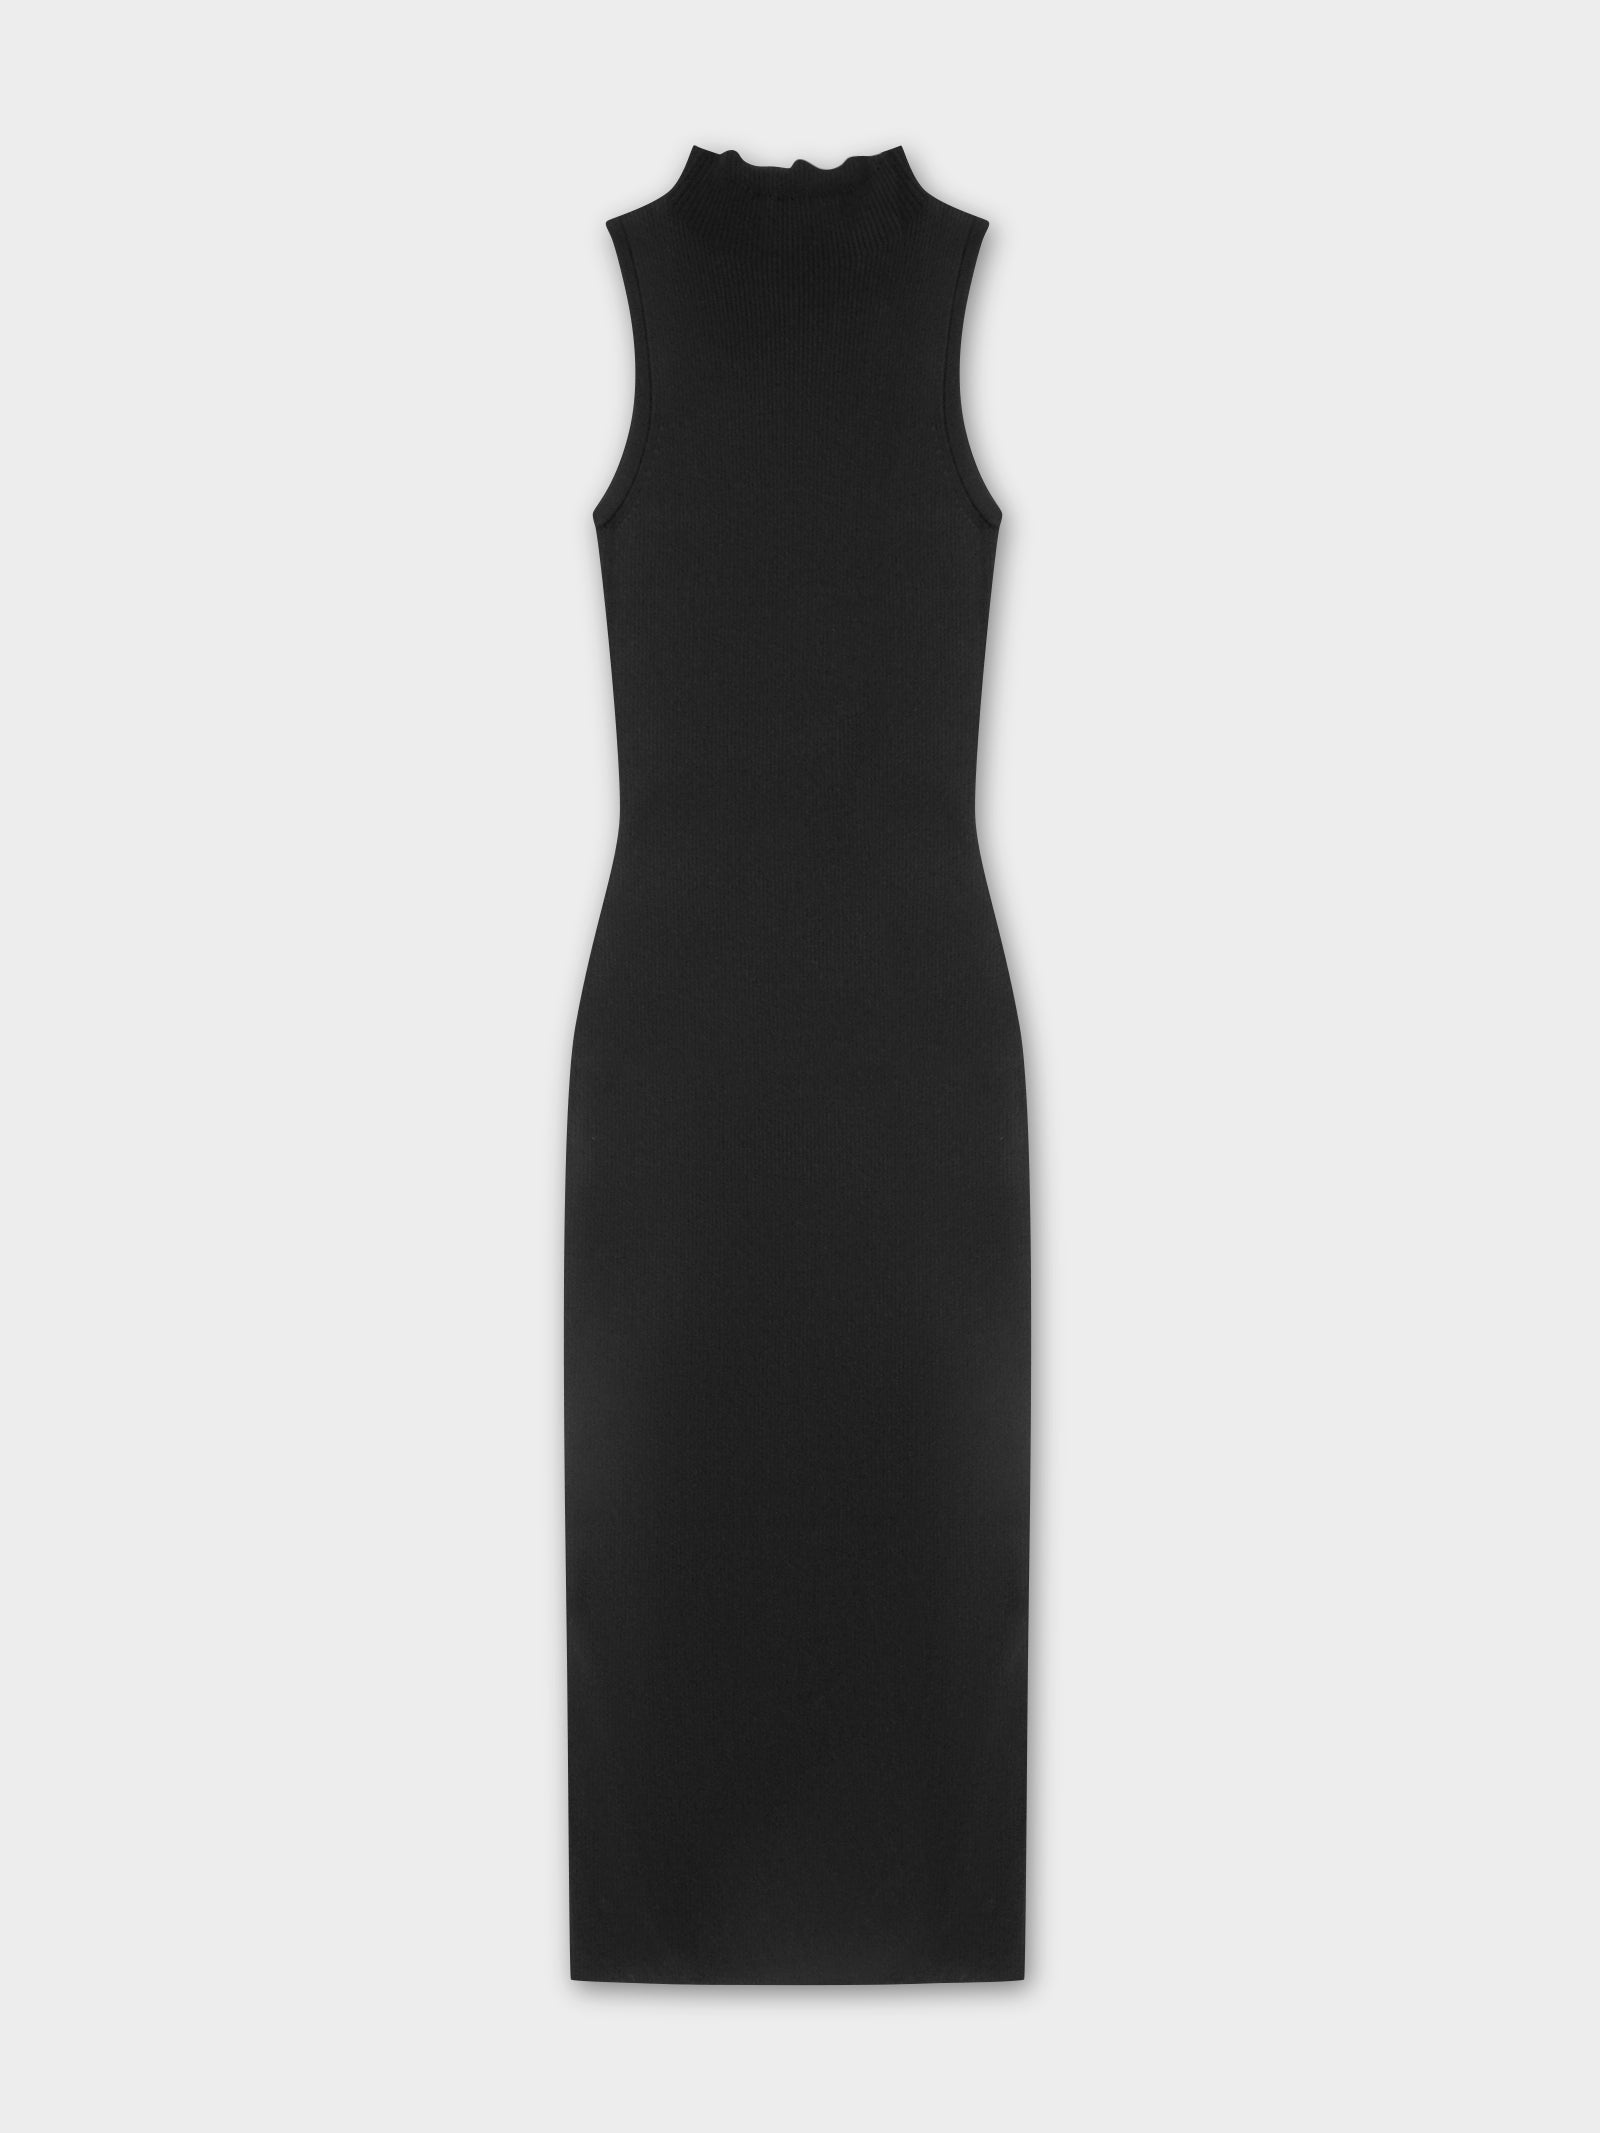 Toni Knit Dress in Black